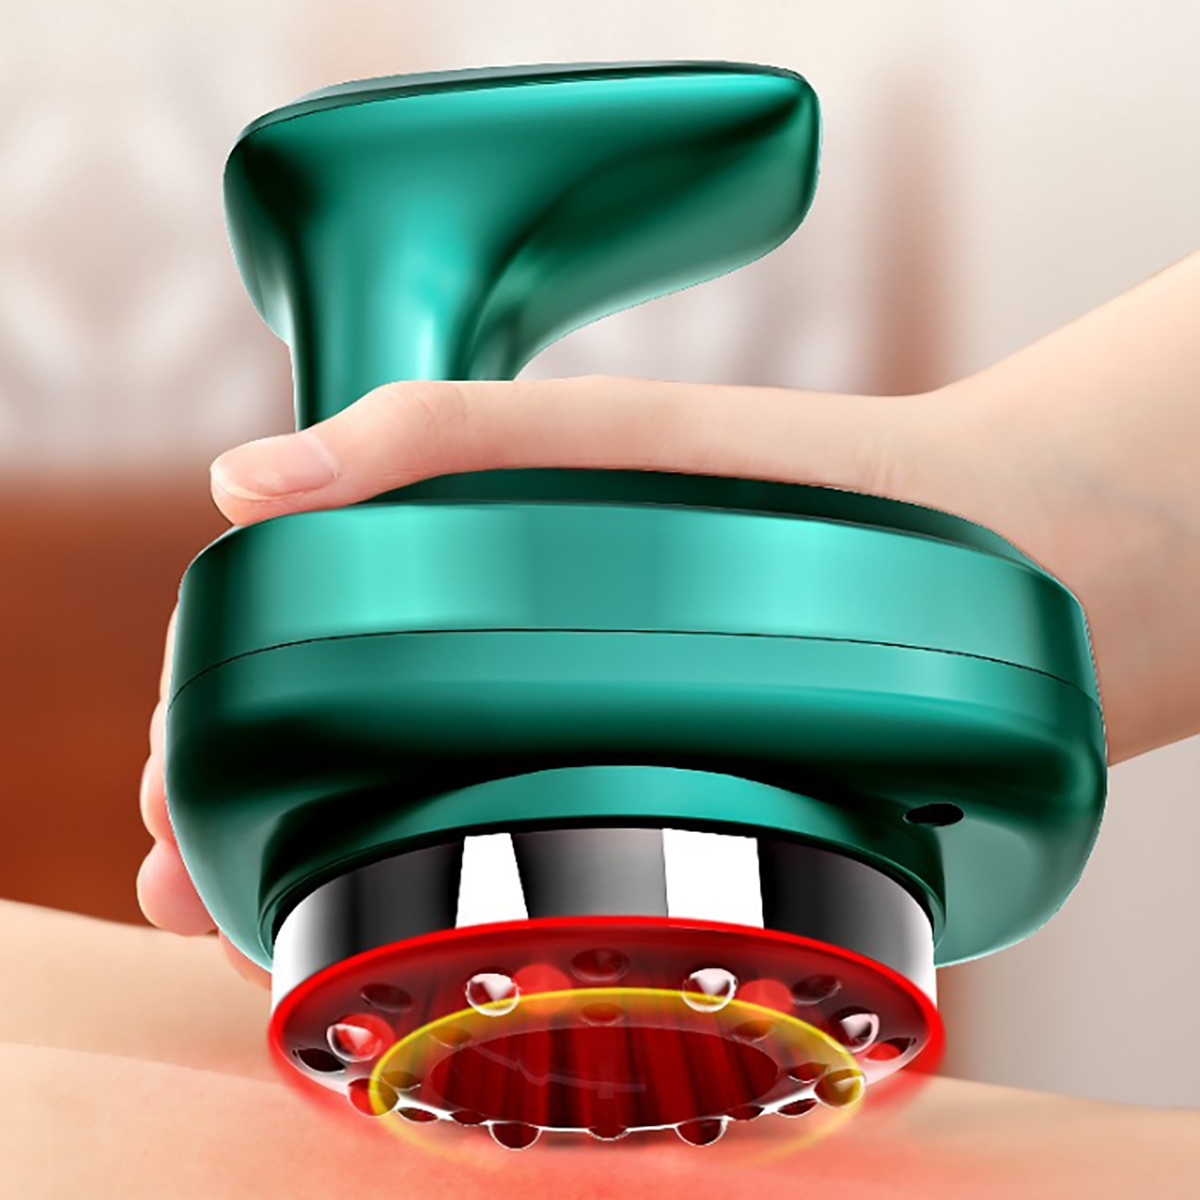 LACAMAX AUX Schaben Instrument und Magnetwellenpflege Schröpfen, Scraping Massagegerät Intelligent 